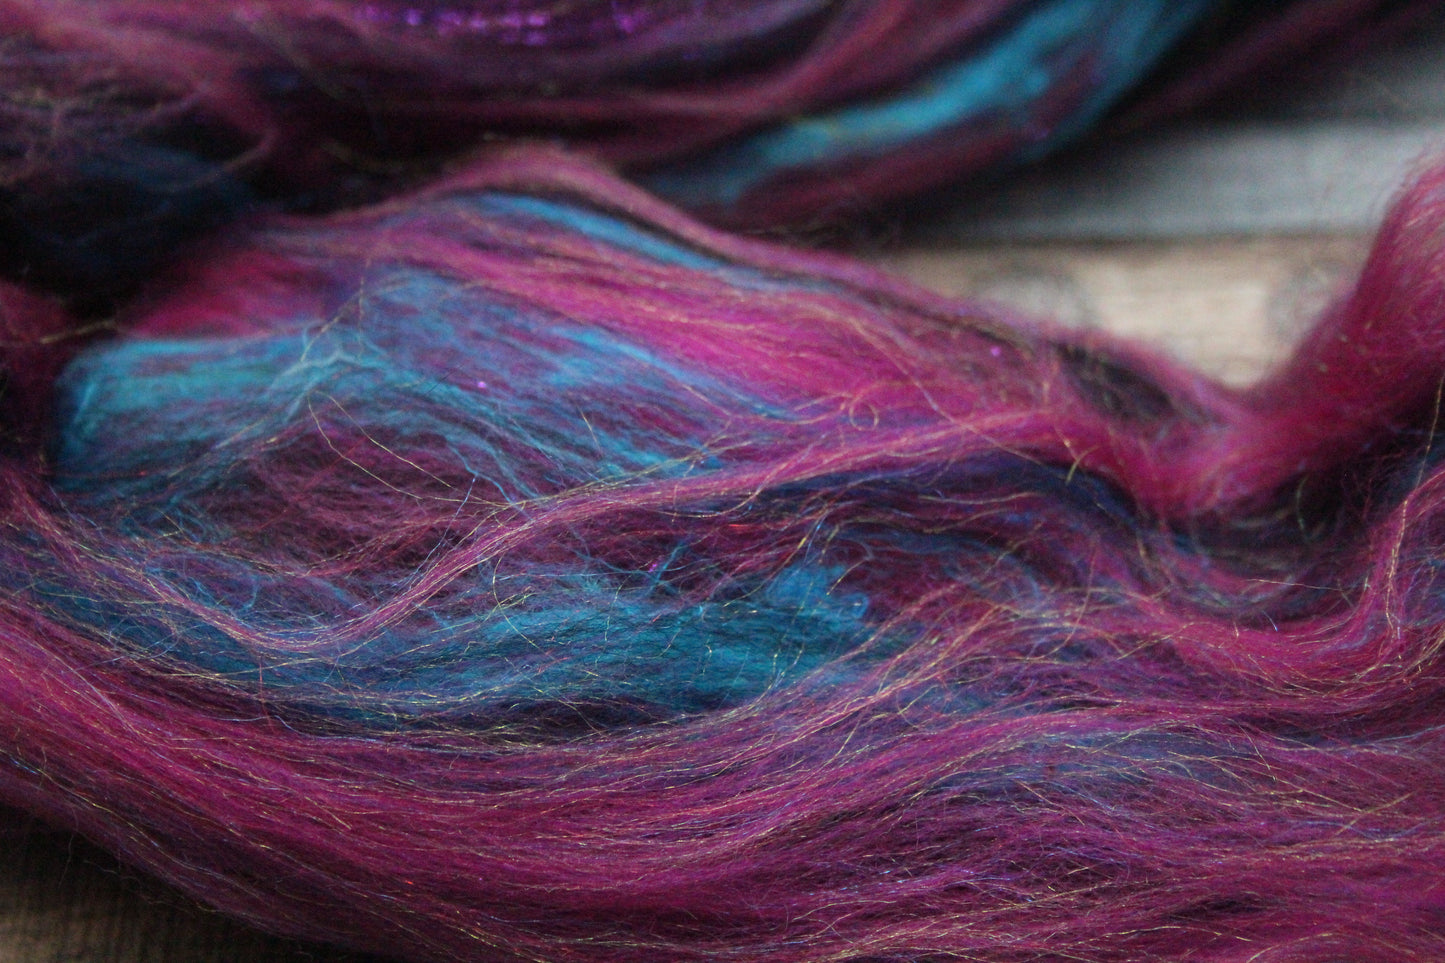 Merino Wool Blend - Pink Black - 25 grams / 0.8 oz  - Fibre for felting, weaving or spinning